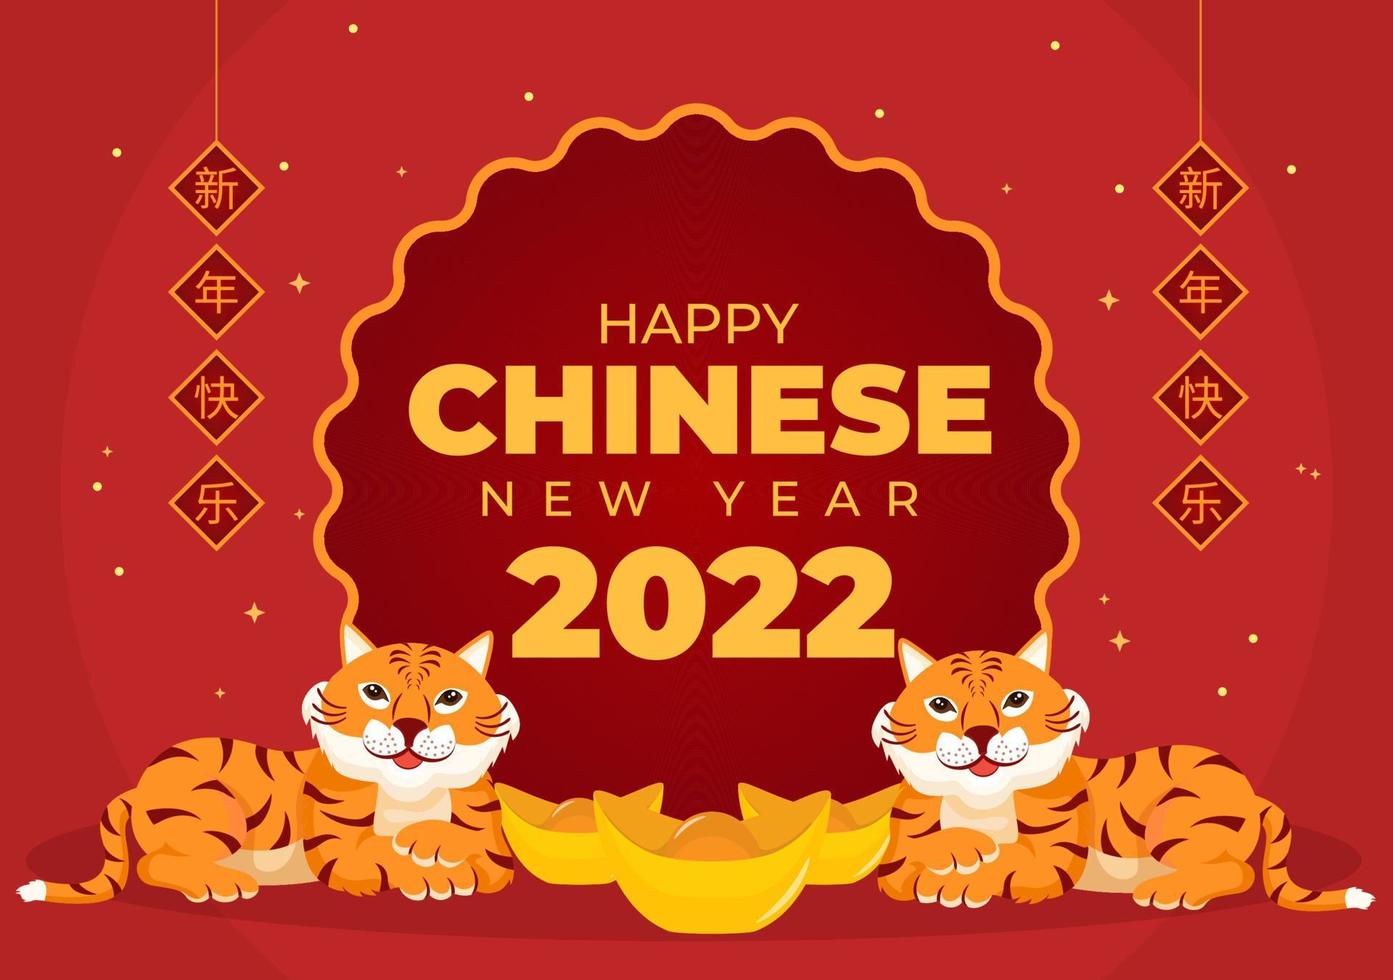 Frohes chinesisches neues jahr 2022 mit tierkreis süßem tiger und blume auf rotem hintergrund für grußkarten, kalender oder poster in flacher designillustration vektor